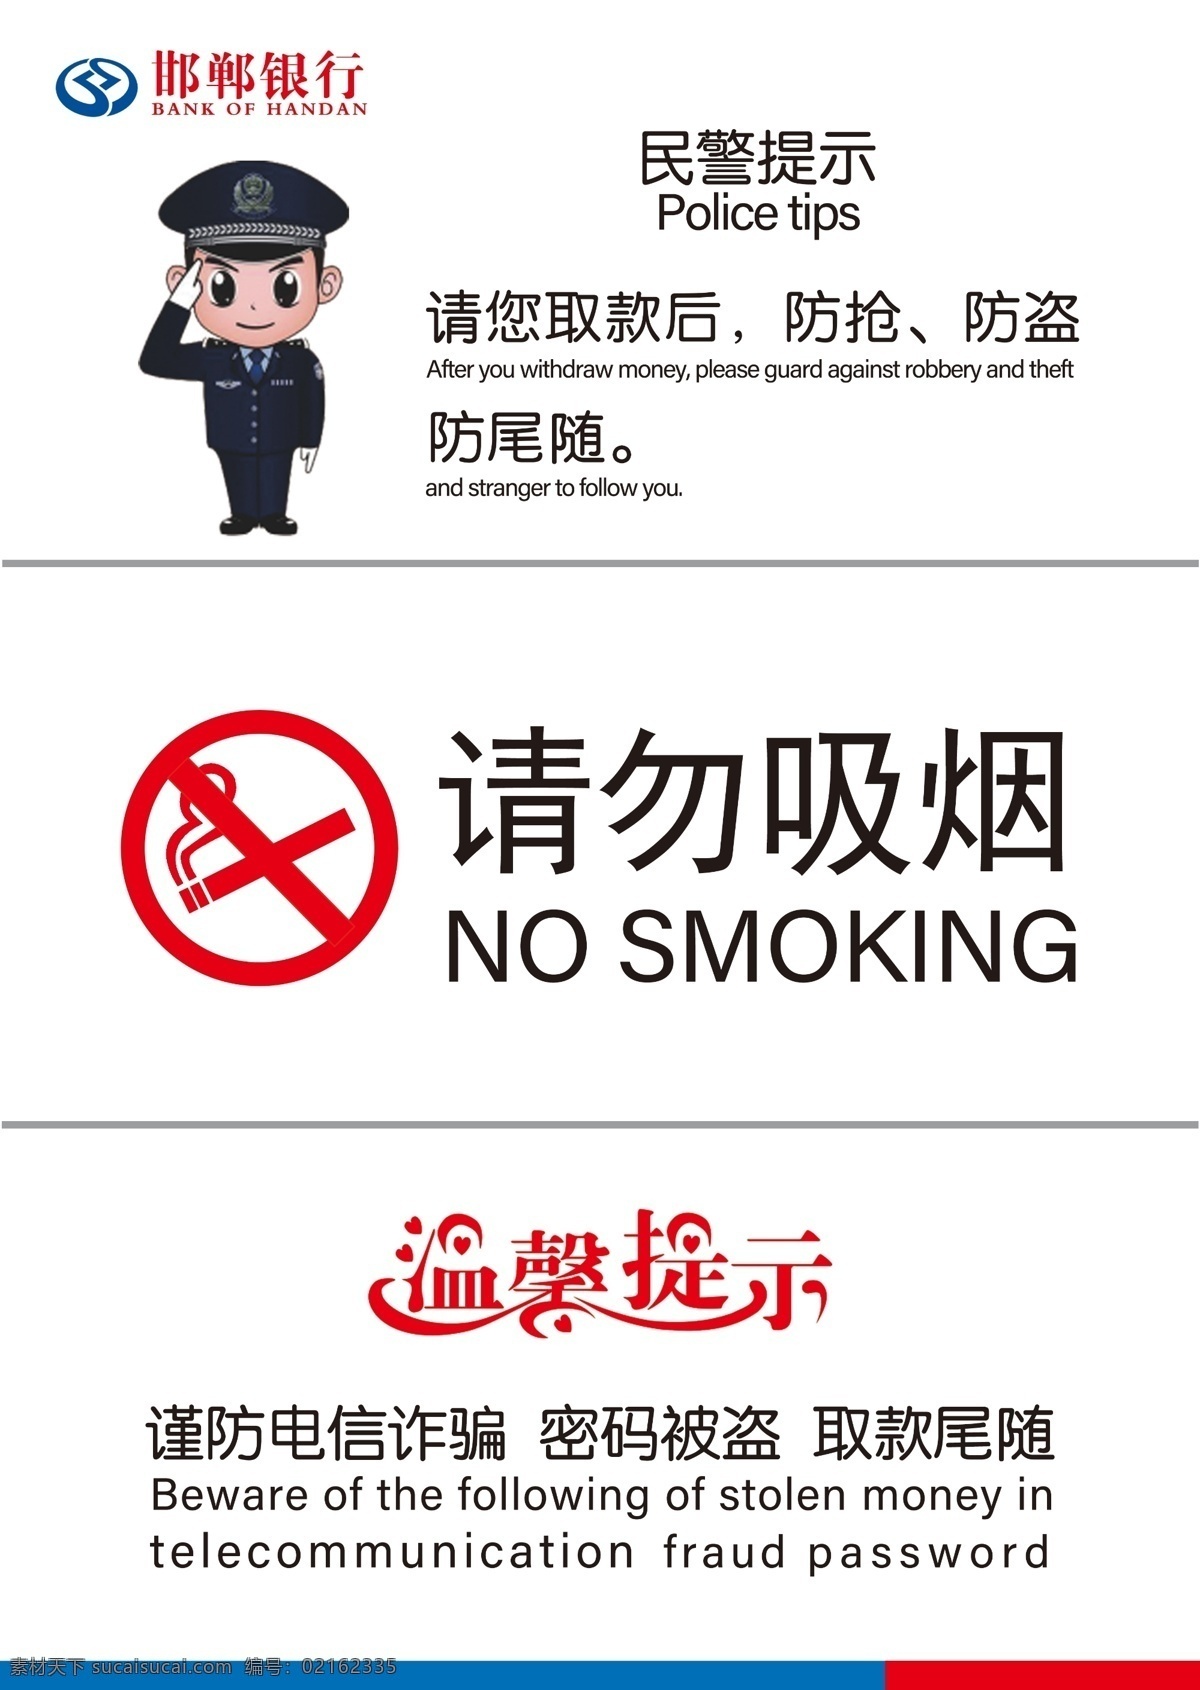 邯郸 银行 民警 提示 邯郸银行 民警提示 请勿吸烟 防尾随 取款 党在我心中 展板模板